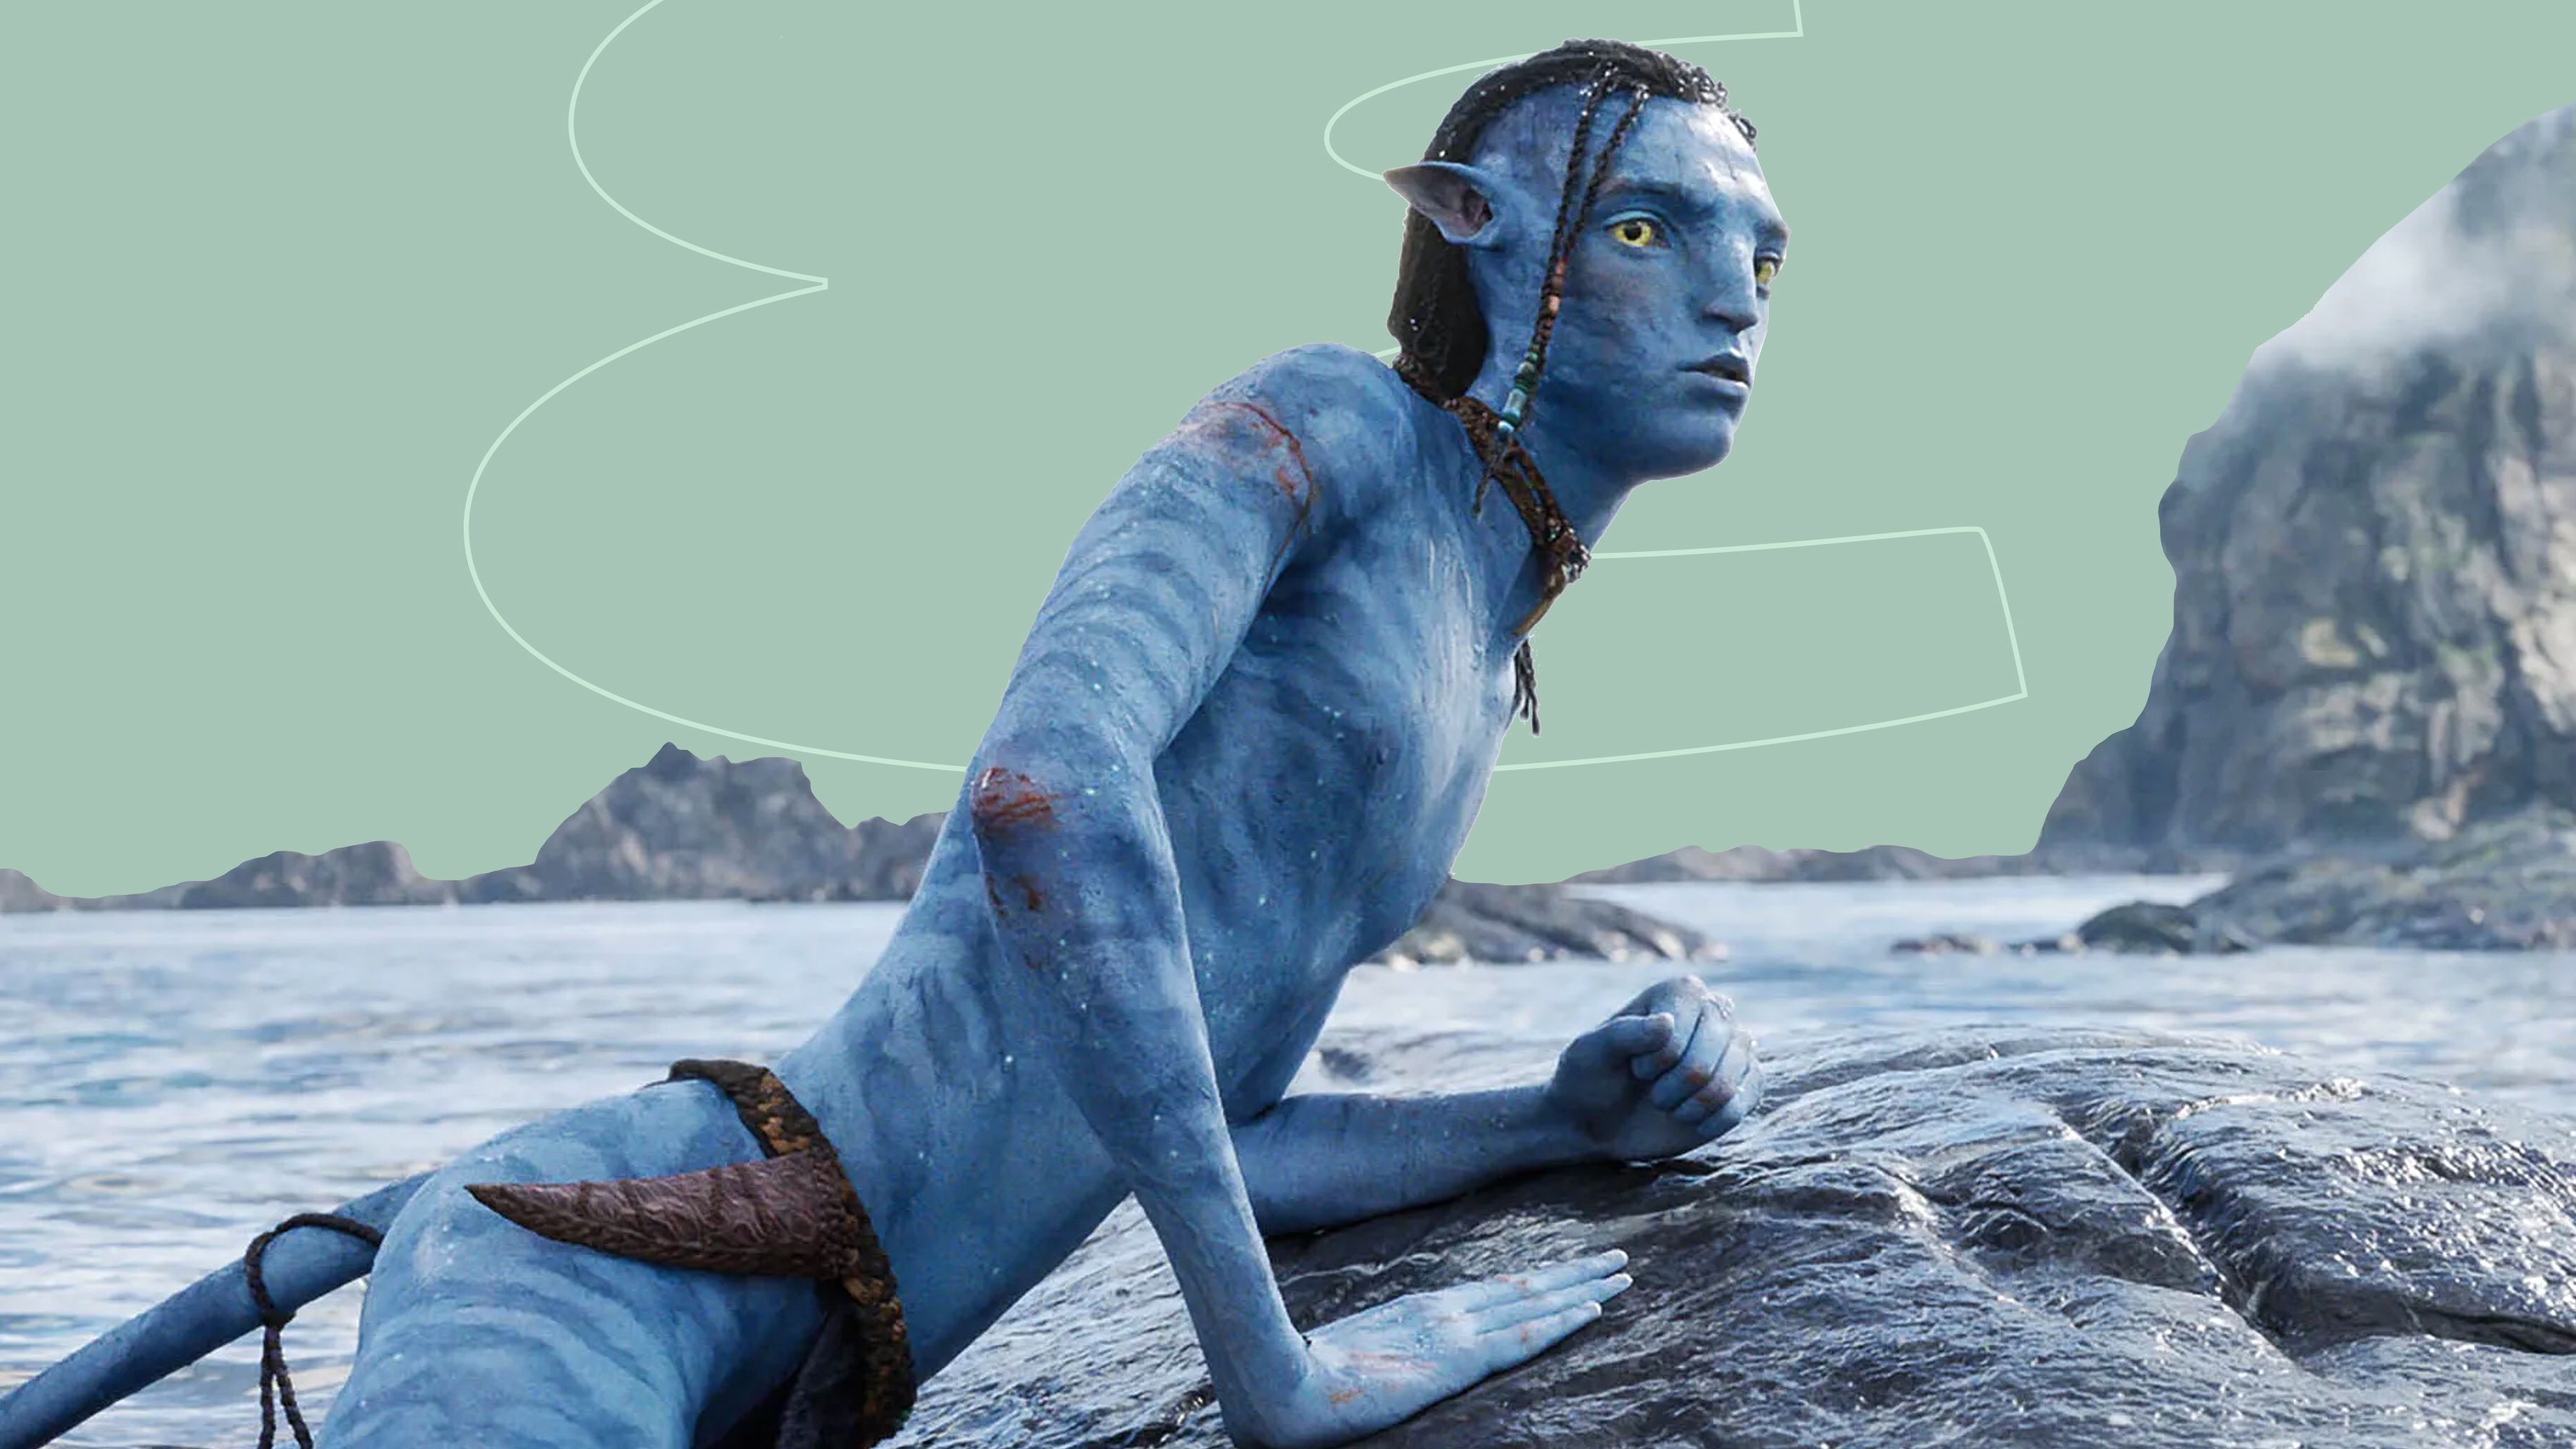 Watch Avatar: The Way of Water: Đắm mình trong những chuyến phiêu lưu đầy mạo hiểm của Jake Sully và người đồng minh Na\'vi trong bộ phim AVATAR: The Way of Water. Với những màn đánh trận dữ dội, những cảnh quay đẹp mê hồn và những thông điệp sâu sắc về bảo vệ môi trường, Avatar: The Way of Water hứa hẹn sẽ là một trải nghiệm đáng nhớ cho người xem.